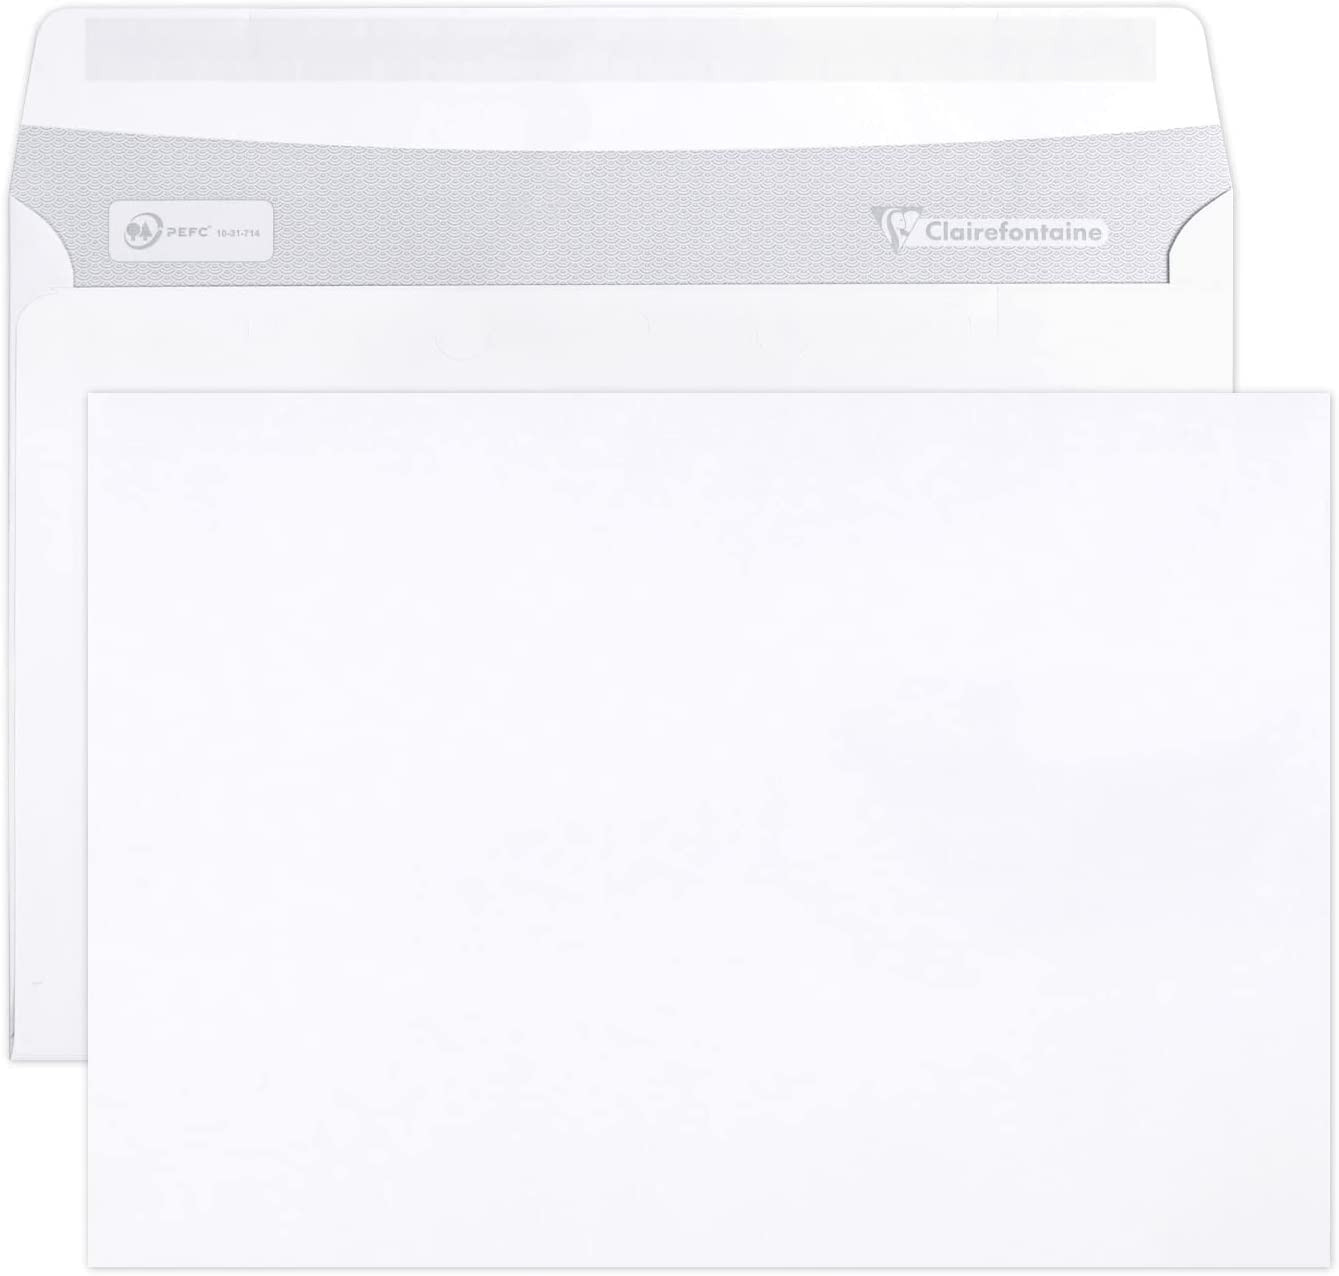 100 enveloppes blanches en papier - 11 x 22 cm